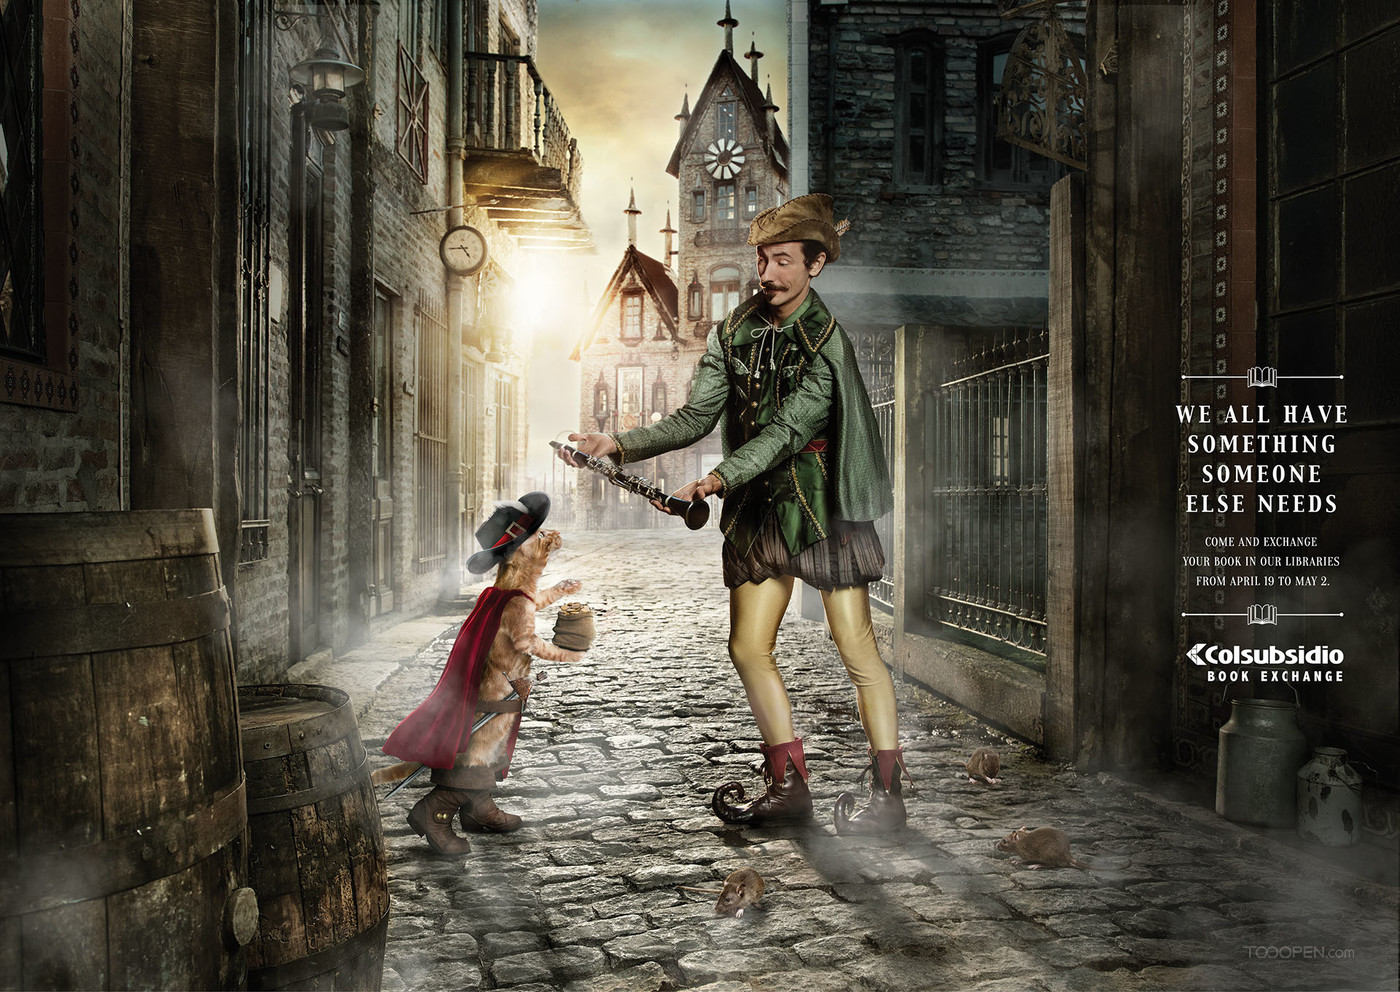 国外超现实主义童话创意数码合成广告海报欣赏-03